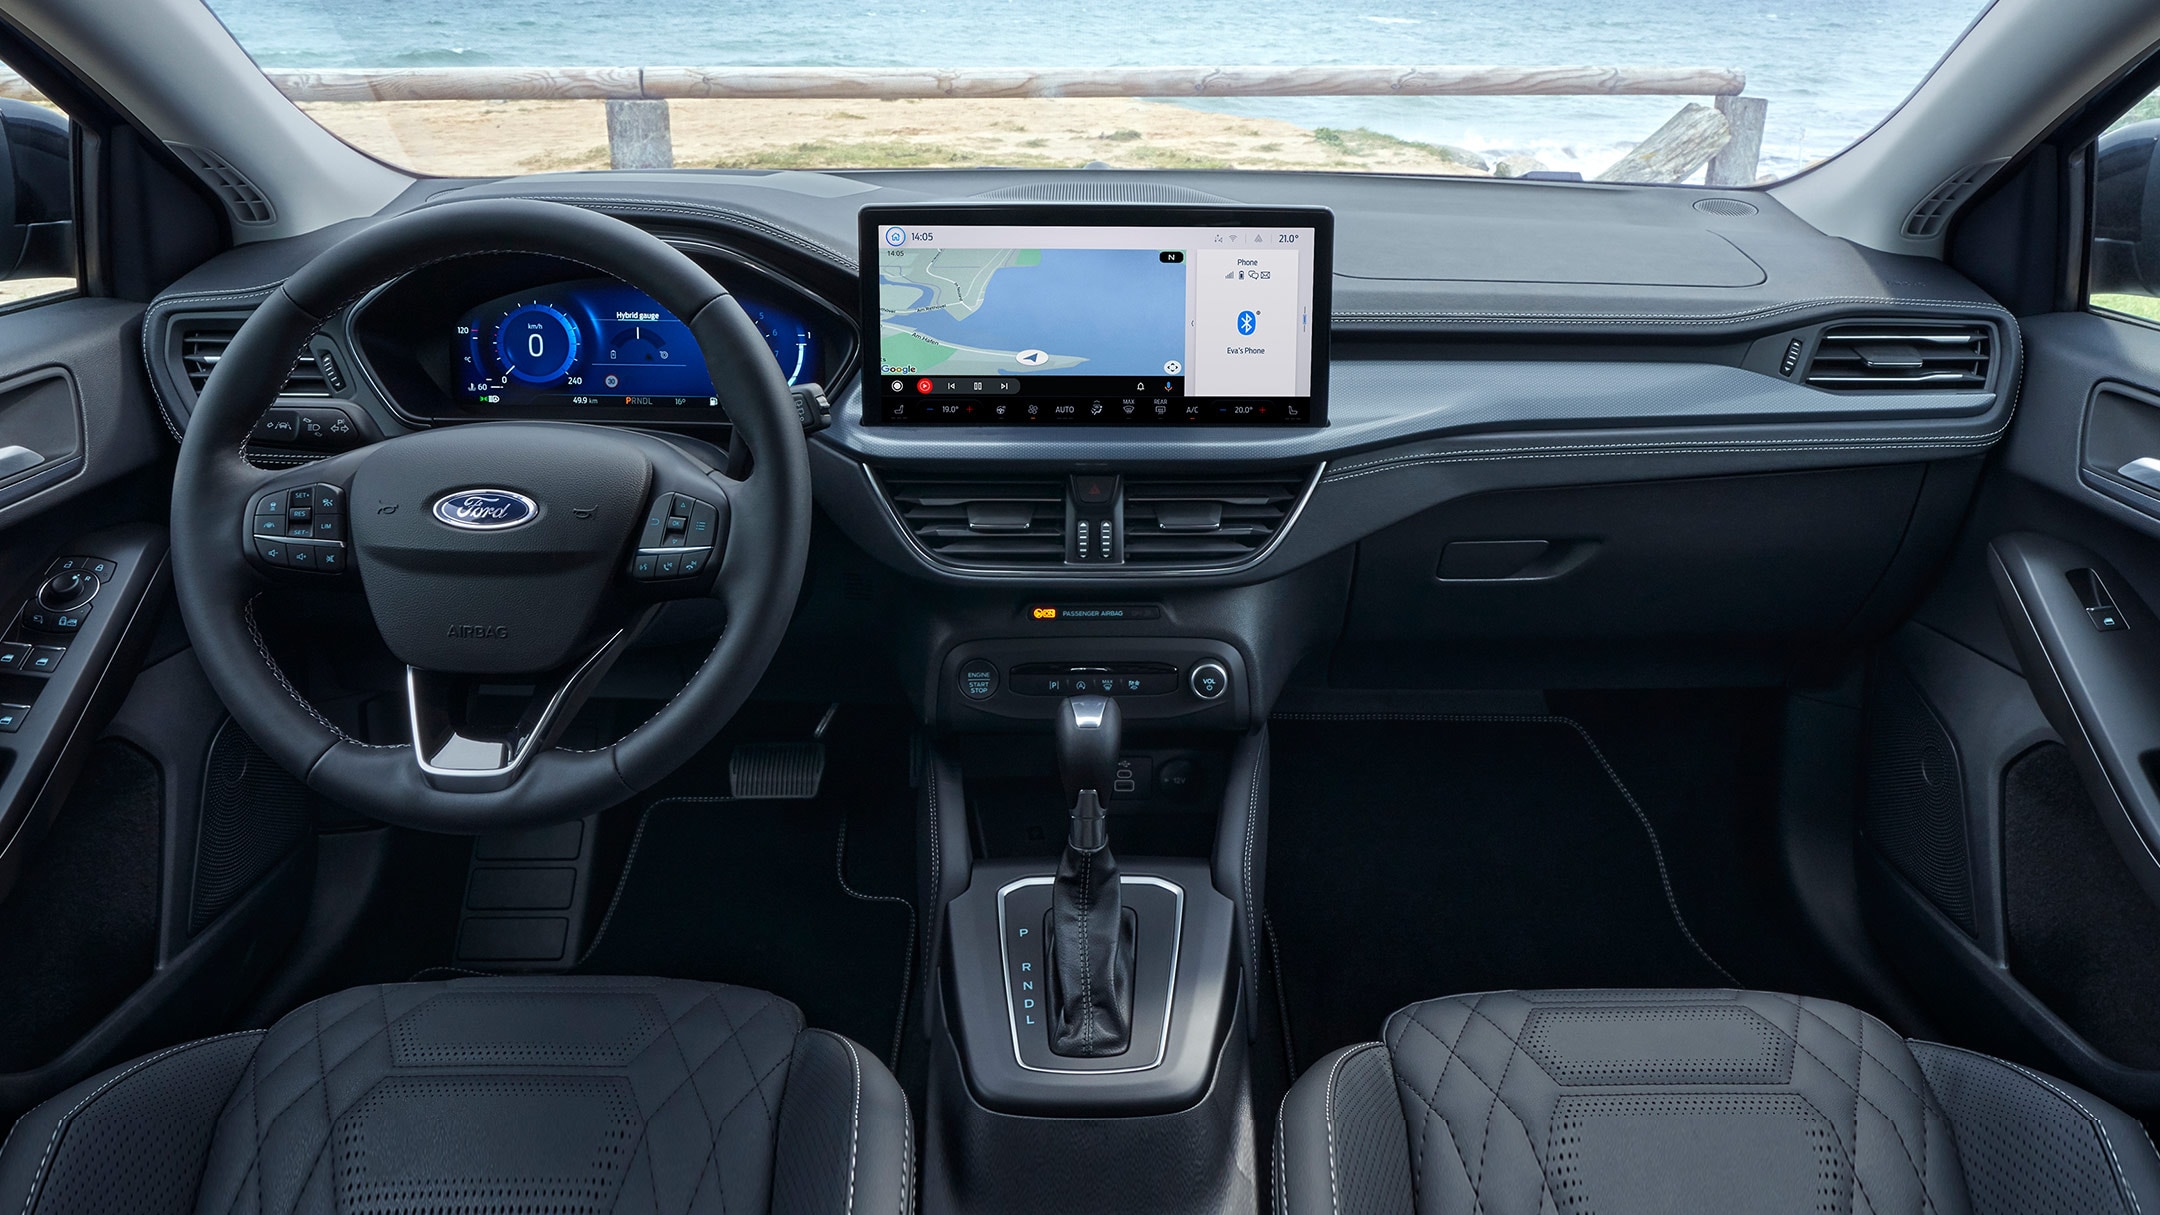 Ford Focus Active Innenraum. Detailansicht Fahrer- und Beifahrerseite